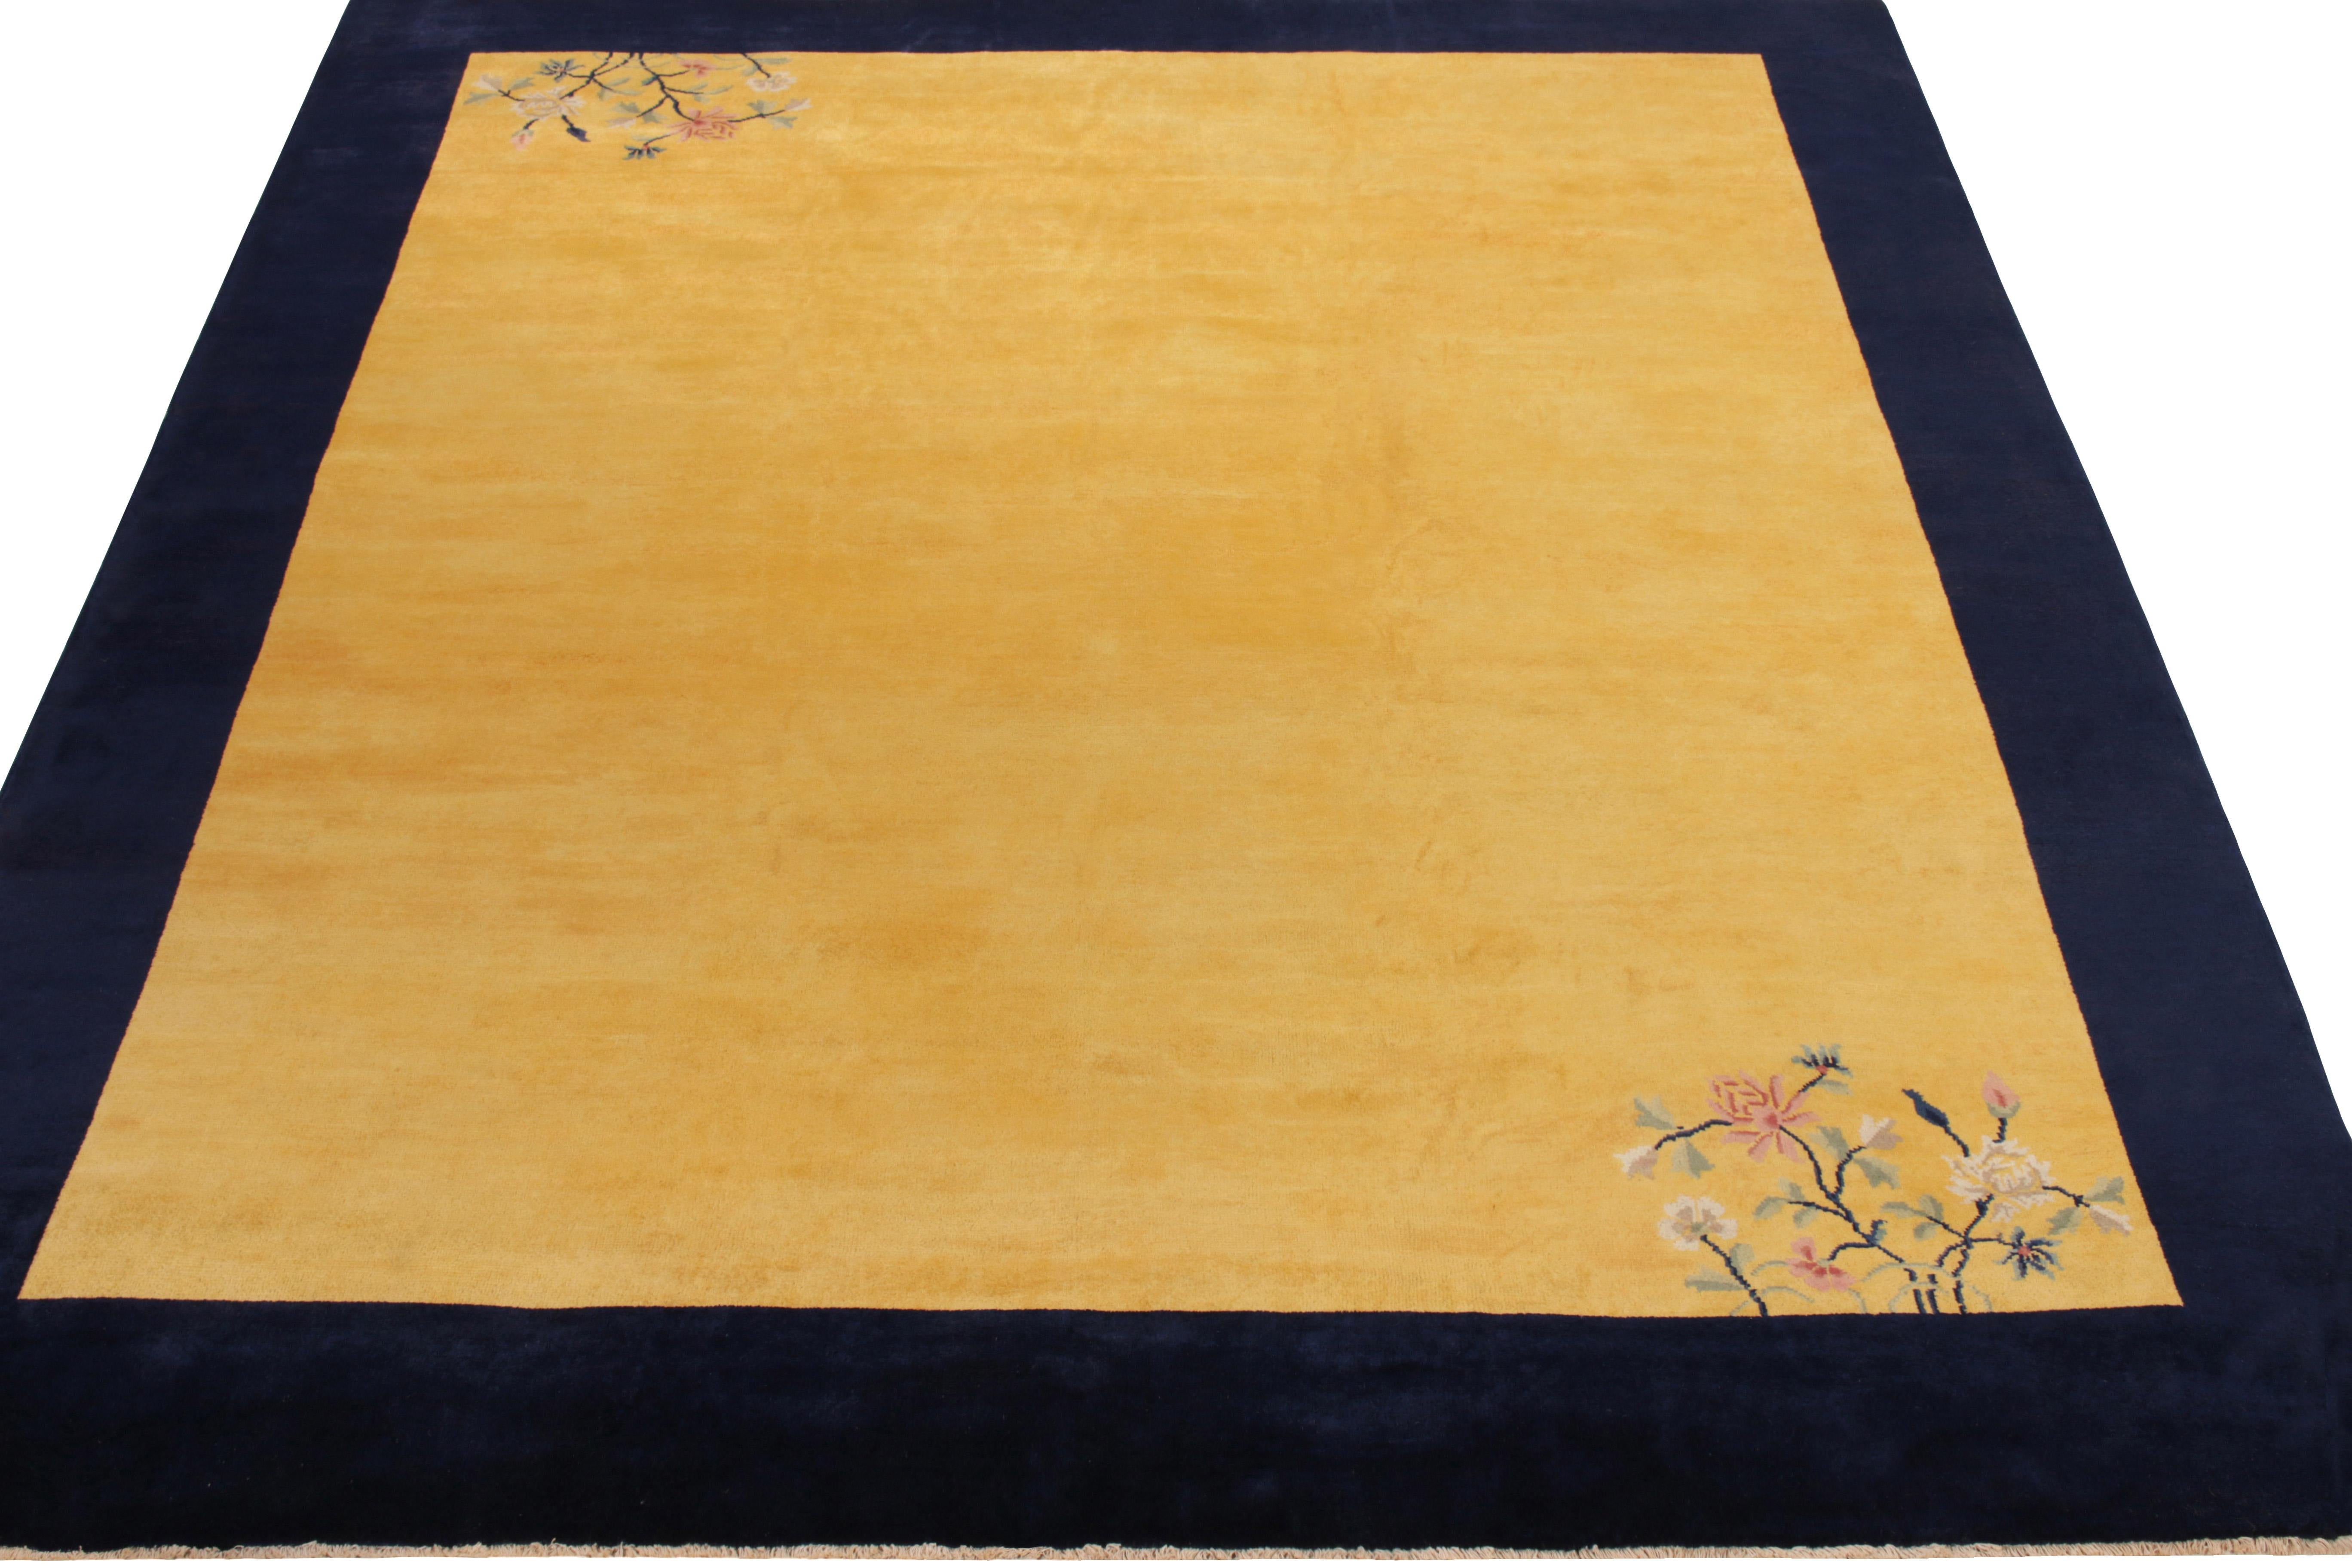 Ein 8x10 großer, handgeknüpfter Teppich aus üppiger Wolle, der von der chinesischen Sensibilität der 1920er Jahre inspiriert ist. 

Über das Design: Die abgewetzten Goldtöne verbinden sich mit dem Glanz der Wolle zu einem verführerischen Schimmer